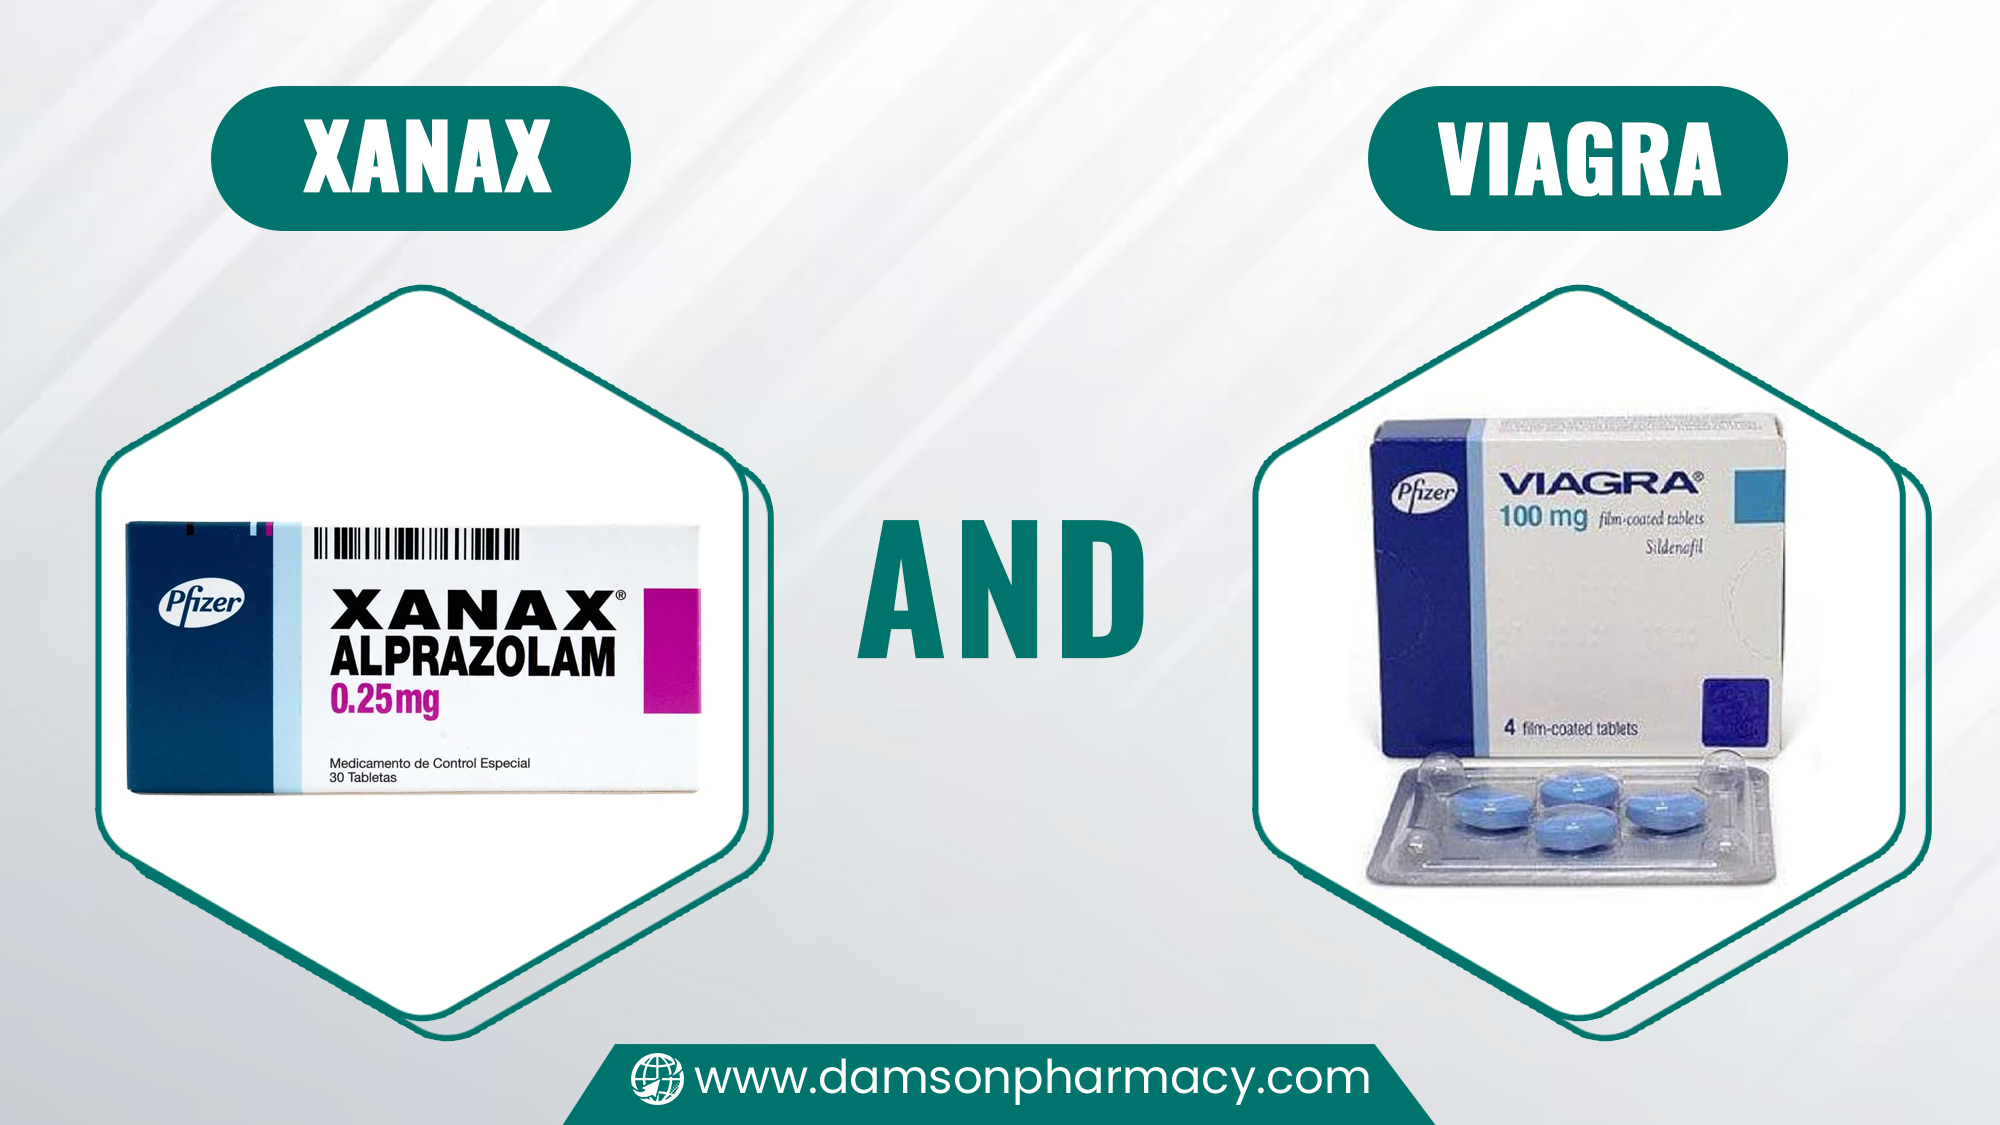 Xanax and Viagra 